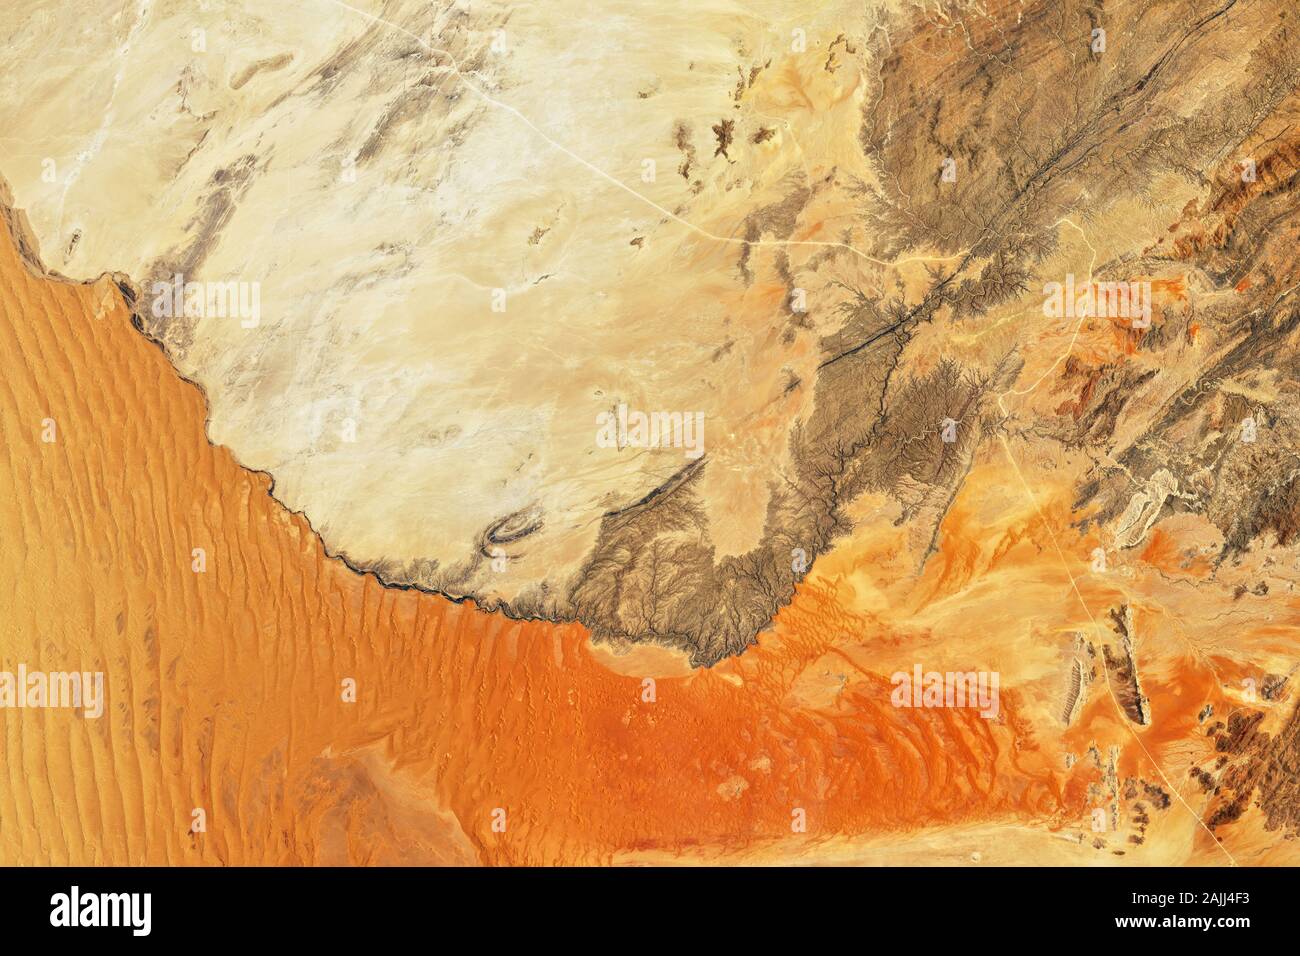 NASA satellite image sand dunes along Kuiseb River, Namibia, Southern Africa Stock Photo